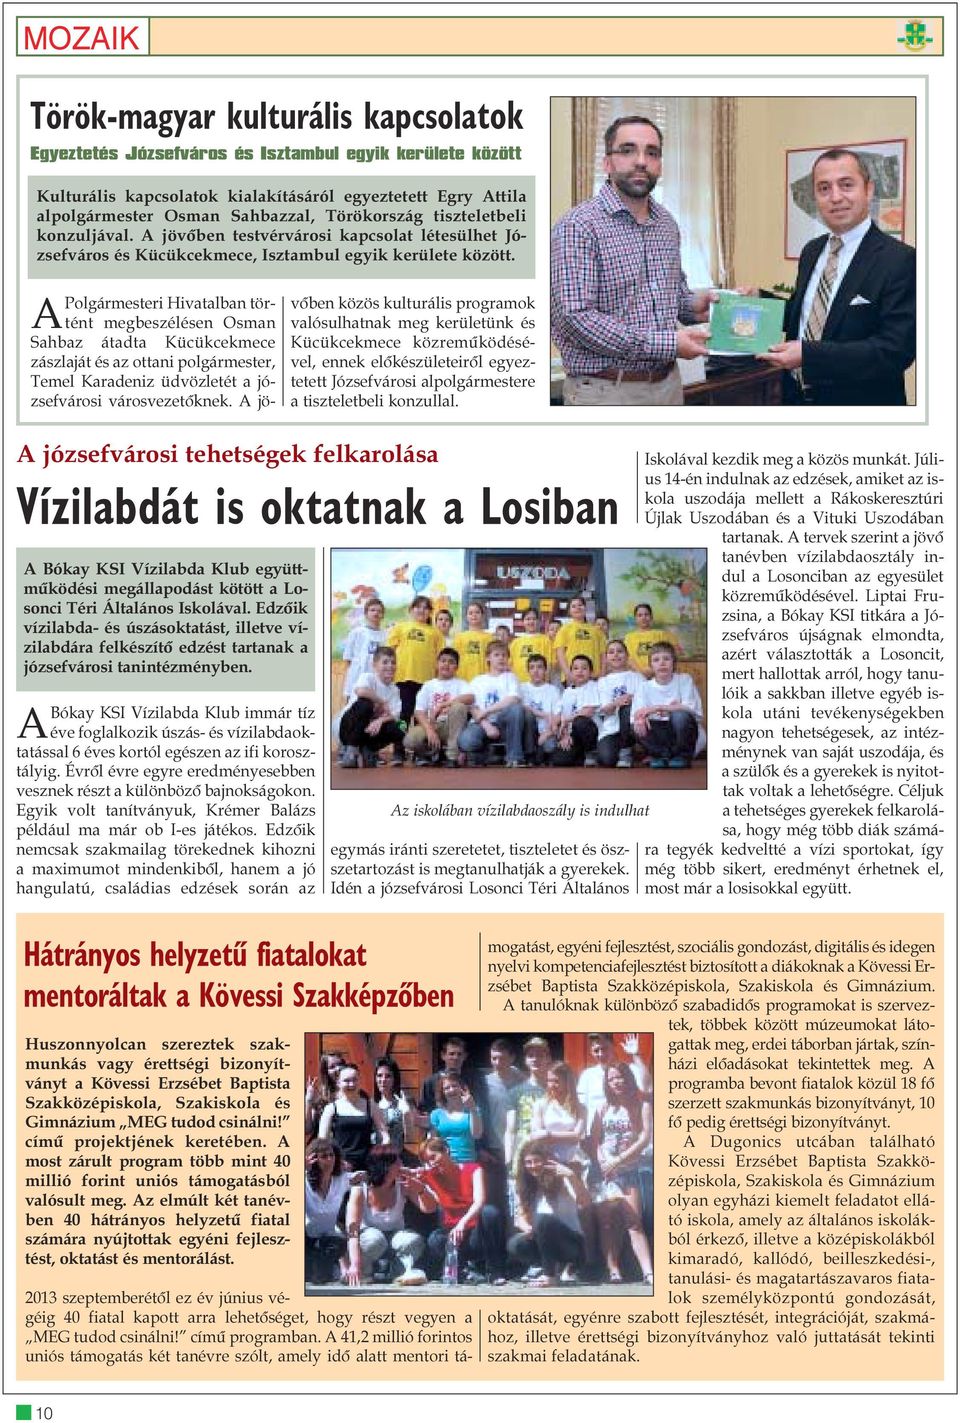 APolgármesteri Hivatalban történt megbeszélésen Osman Sahbaz átadta Kücükcekmece zászlaját és az ottani polgármester, Temel Karadeniz üdvözletét a józsefvárosi városvezetõknek.